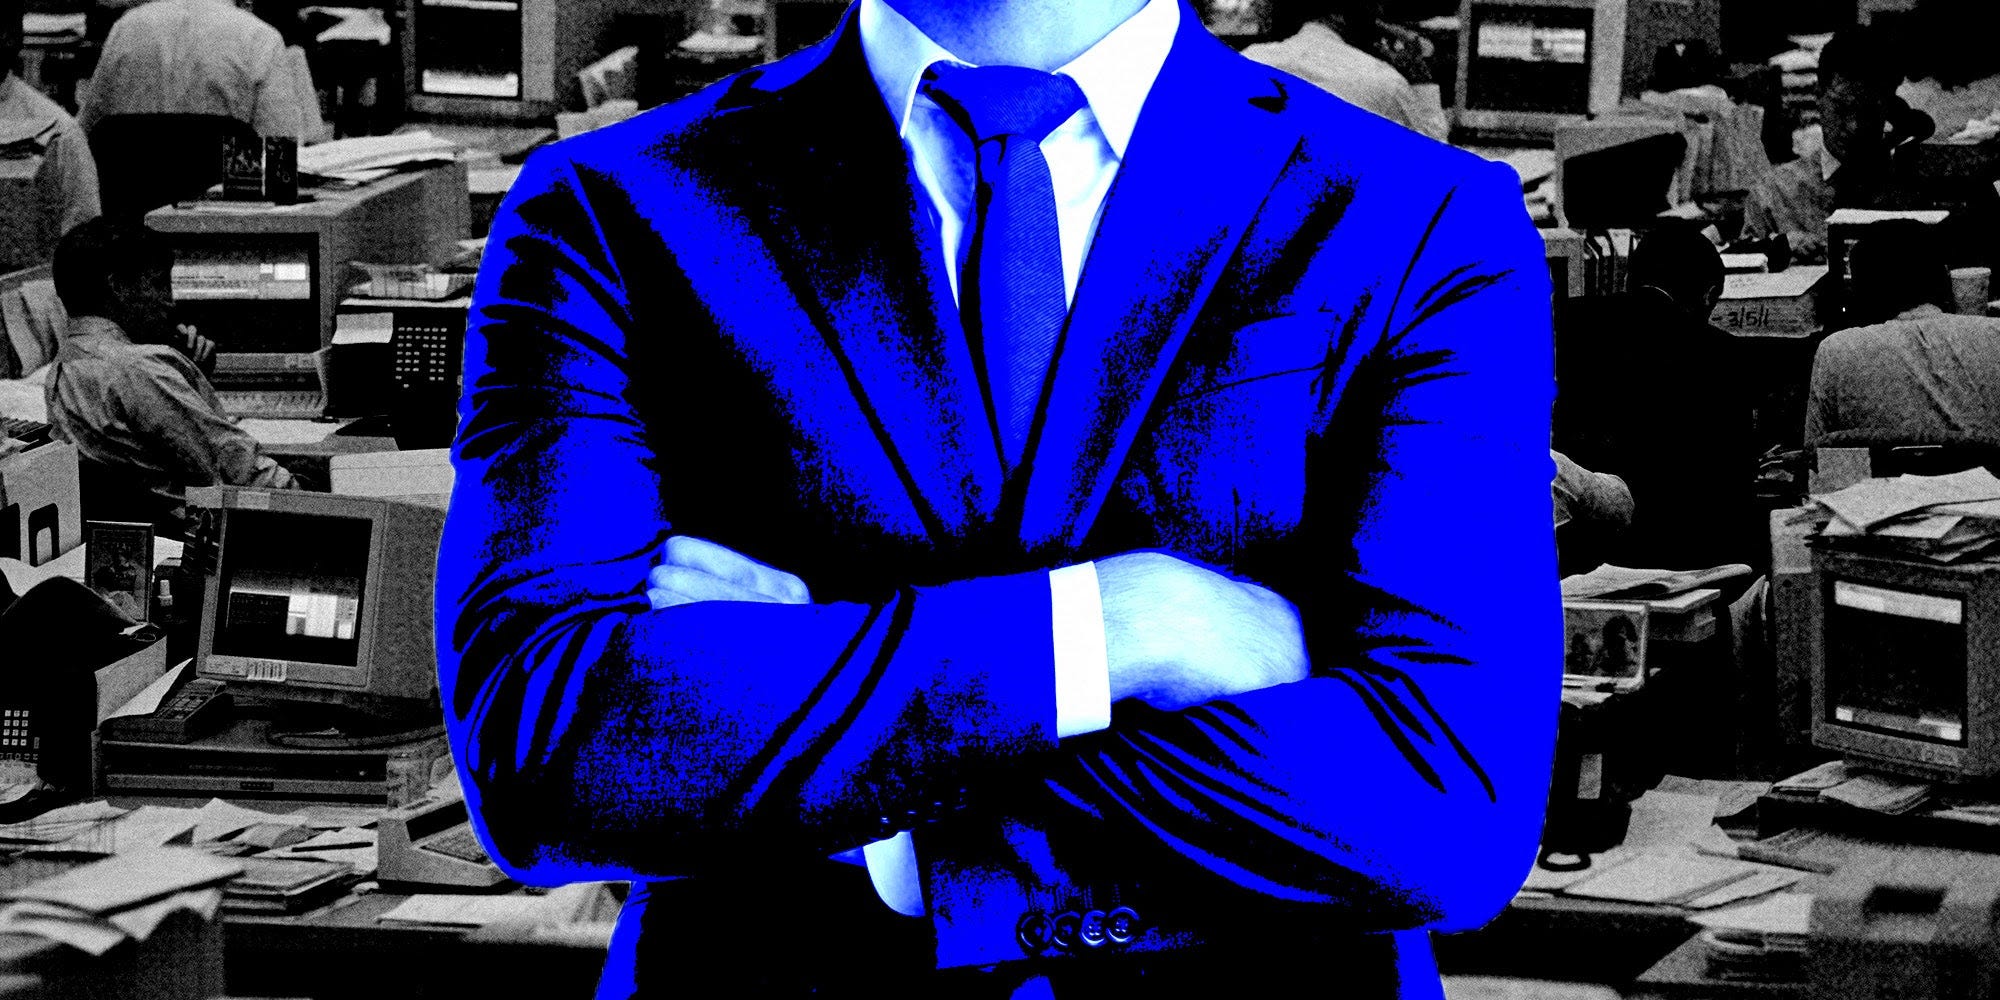 Ein Mann in einem blauen Anzug vor einem schwarz-weißen Hintergrund.